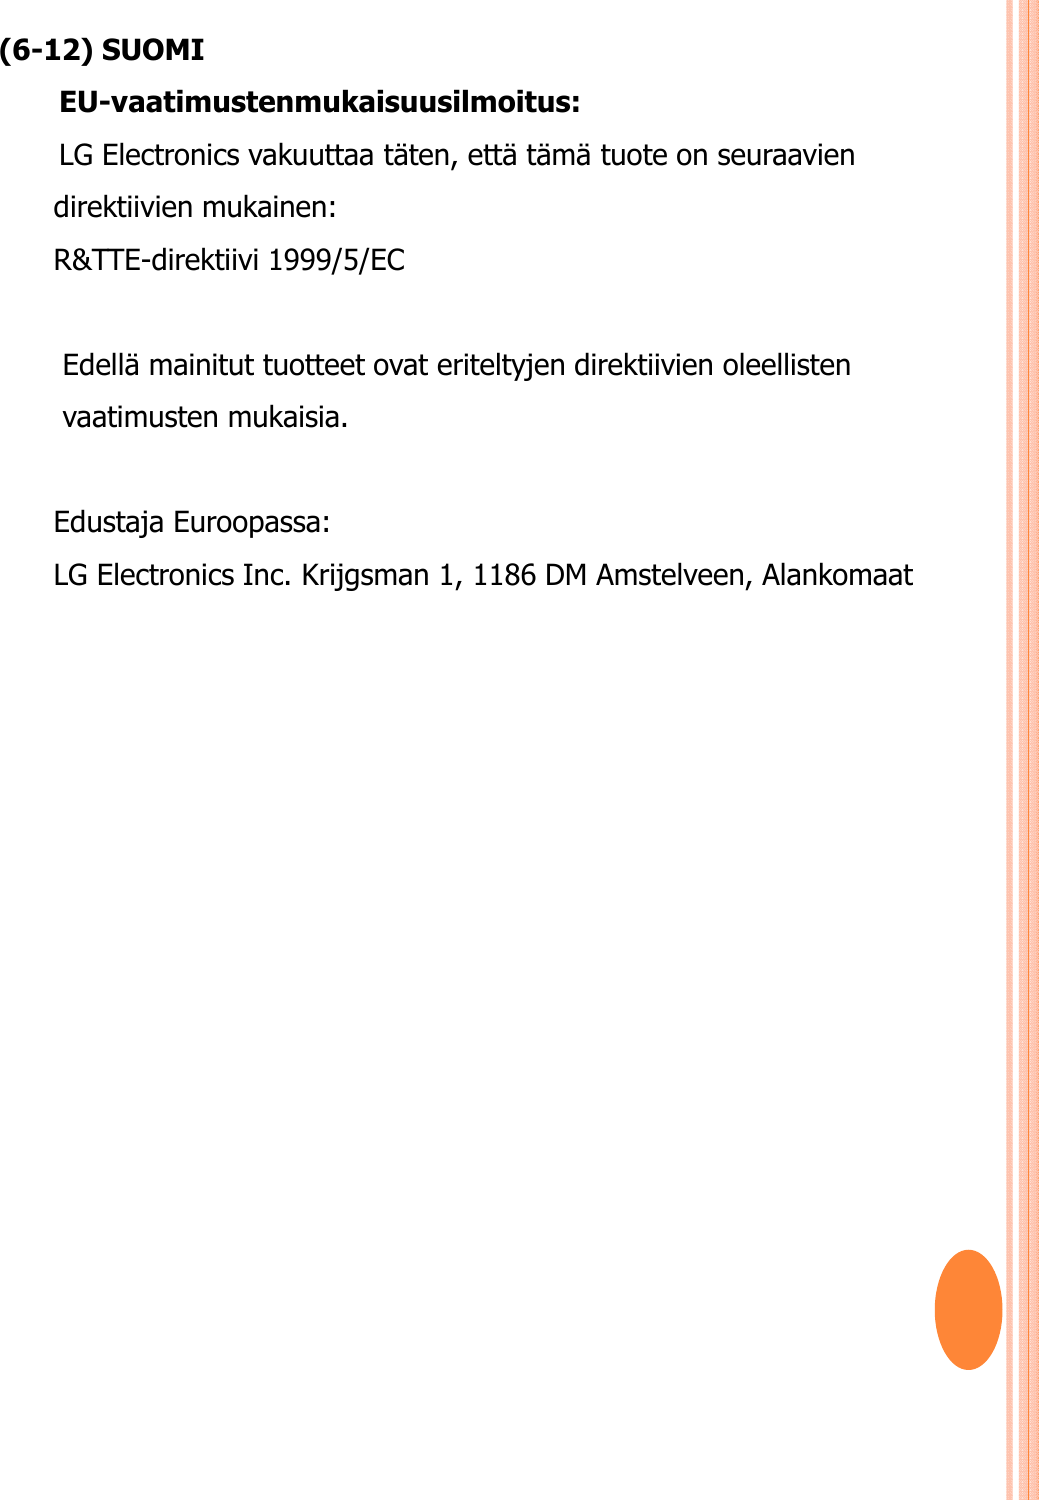 (6-12) SUOMIEU-vaatimustenmukaisuusilmoitus: LG Electronics vakuuttaa täten, että tämä tuote on seuraavien direktiivien mukainen:R&amp;TTE-direktiivi 1999/5/EC Edellä mainitut tuotteet ovat eriteltyjen direktiivien oleellisten vaatimusten mukaisia.Edustaja Euroopassa: LG Electronics Inc. Krijgsman 1, 1186 DM Amstelveen, Alankomaat